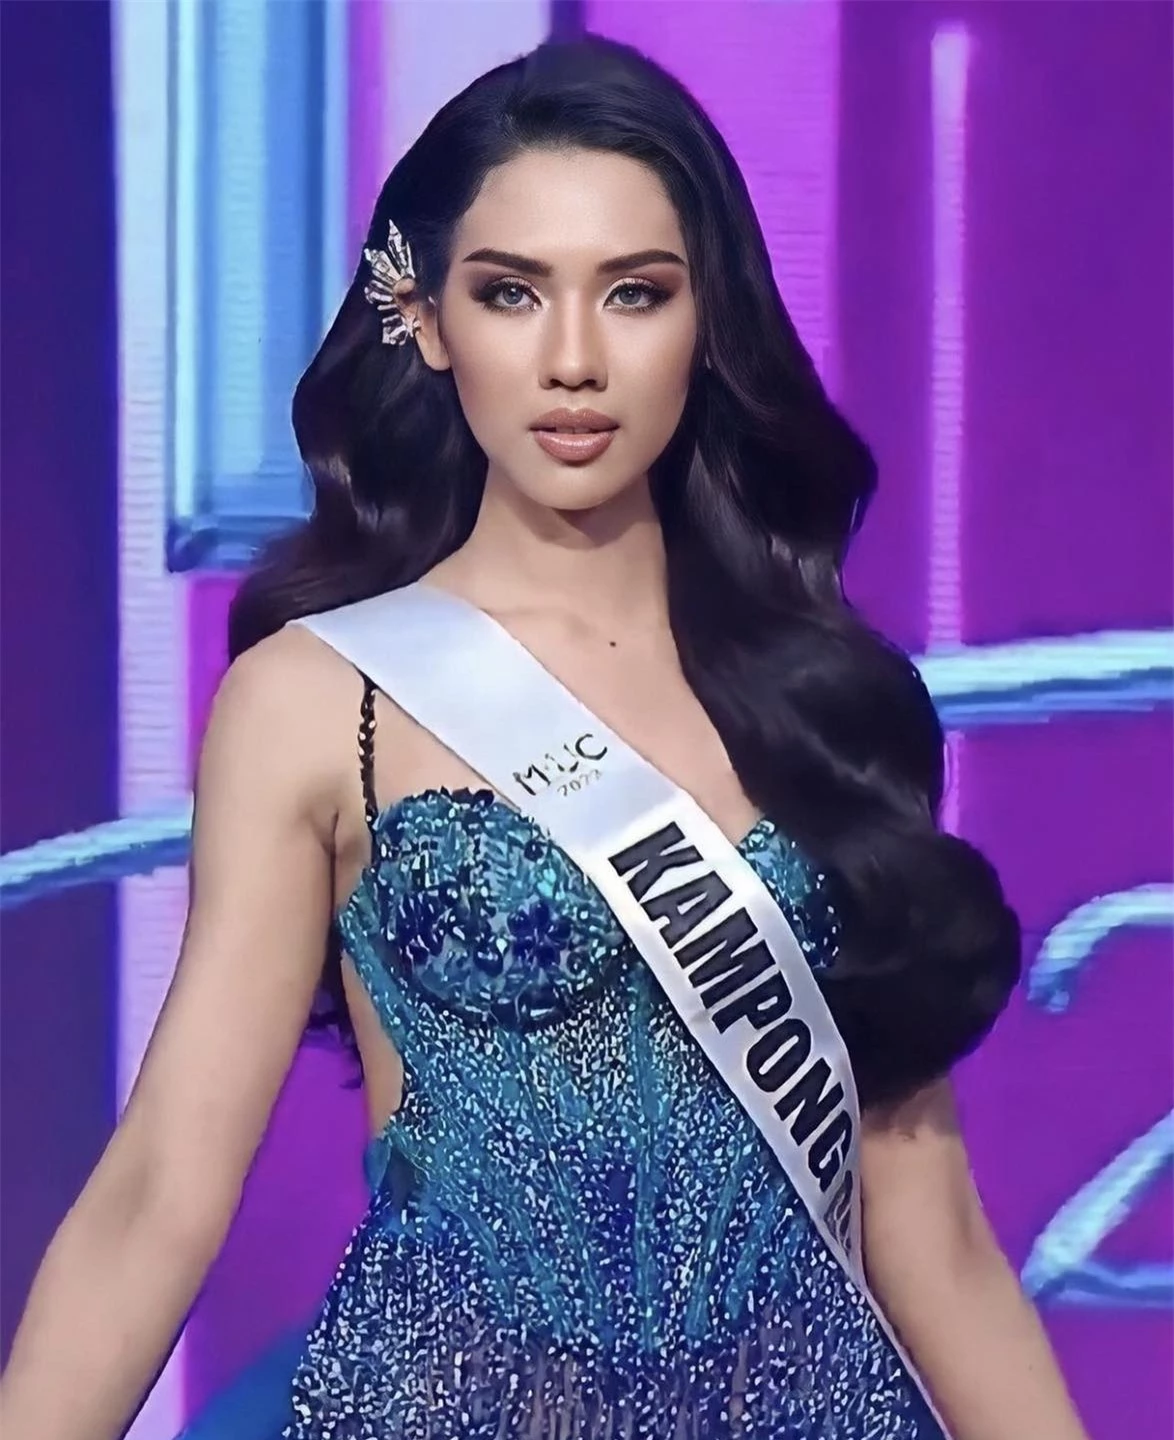 Tân Hoa hậu Hoàn vũ Campuchia được khen ngợi ảnh 2